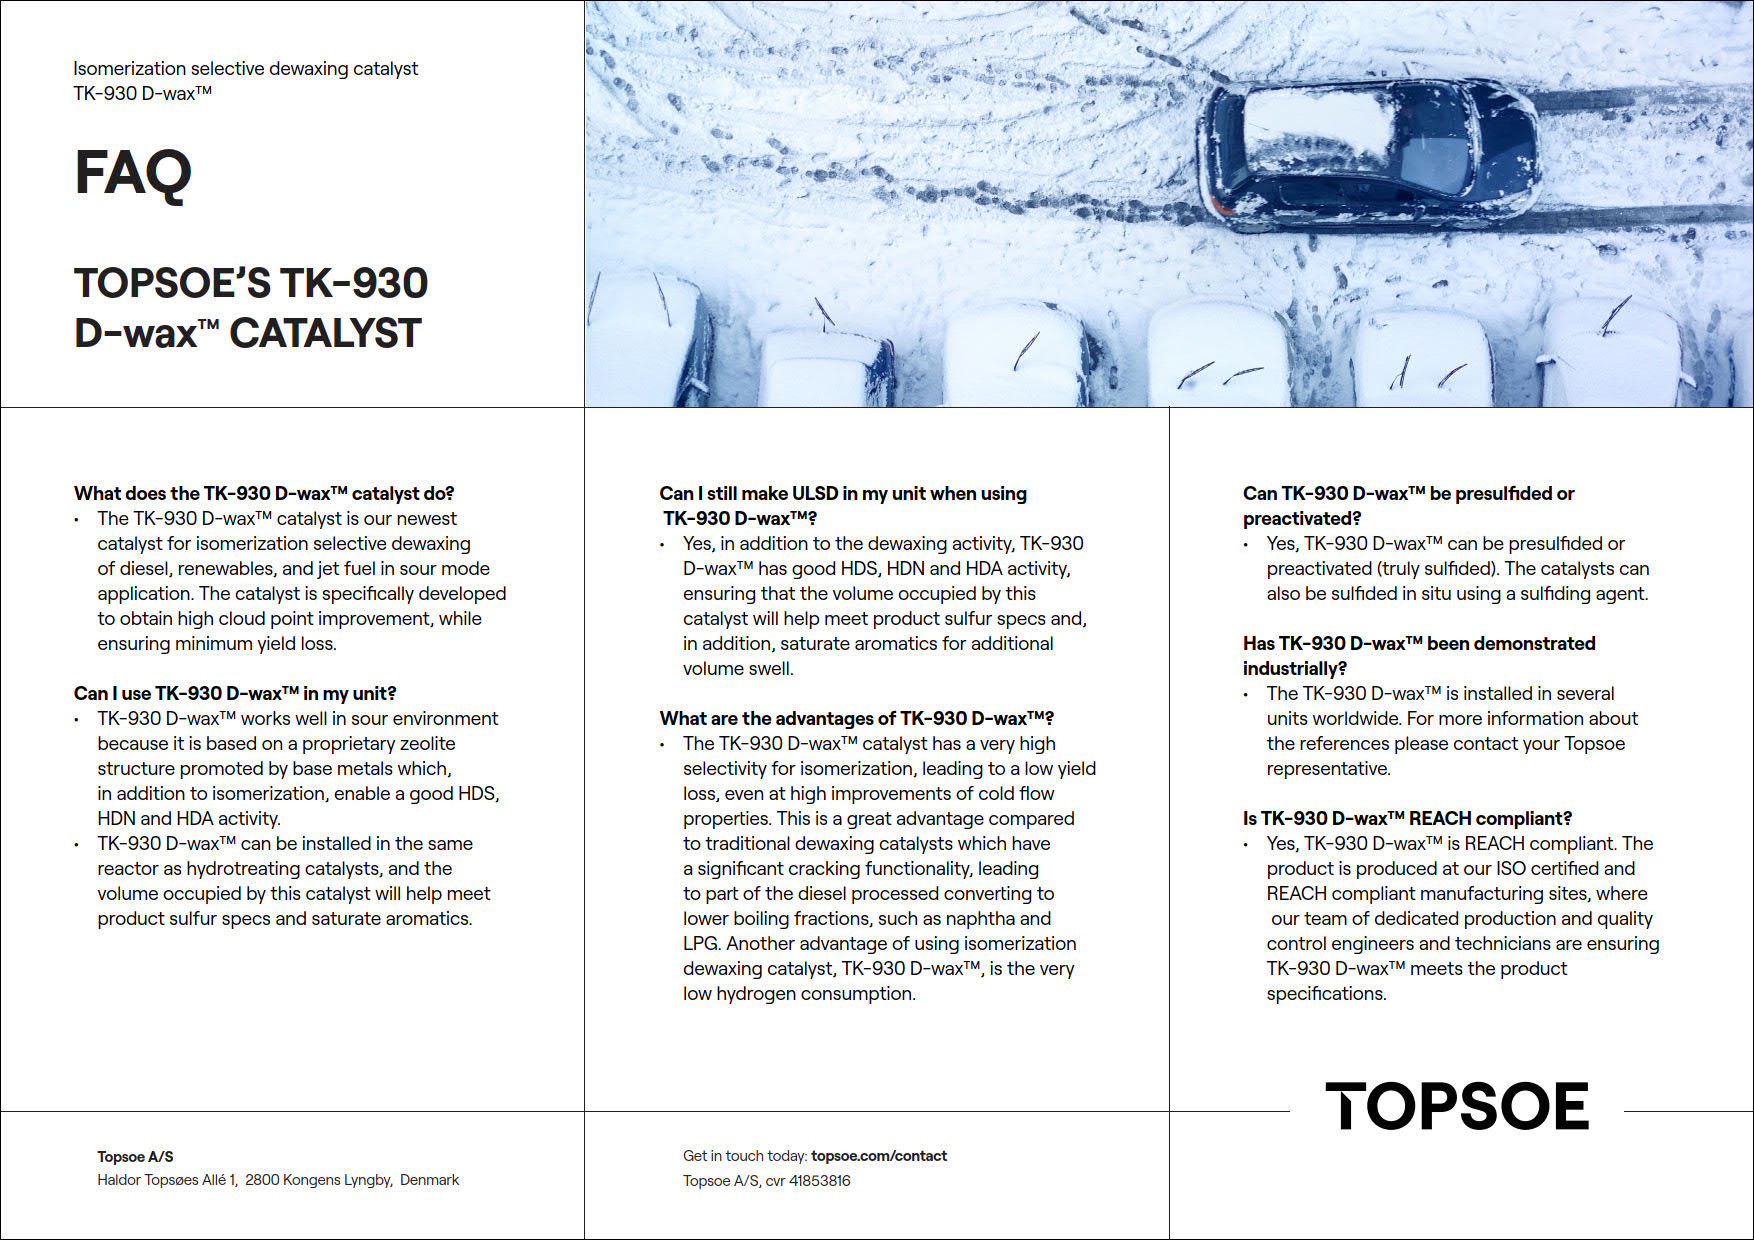 FAQ - Topsoe's TK-930 D-wax™ Catalyst